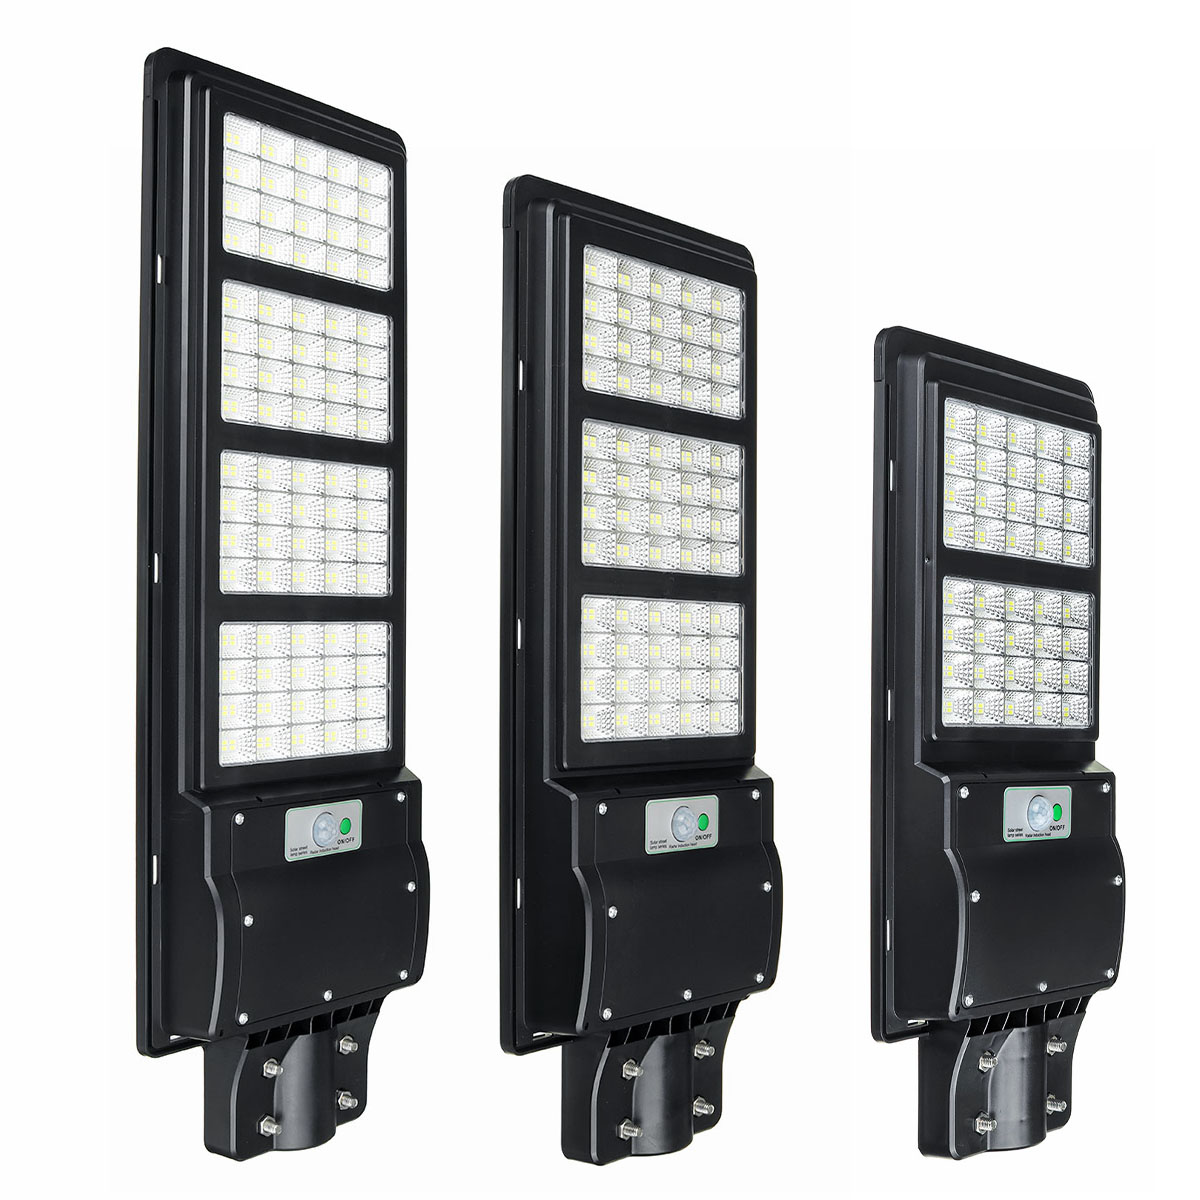 80120160-LED-Solar-Power-LED-Street-Light-PIR-Motion-Sensor-Wall-Lamp-1680469-3